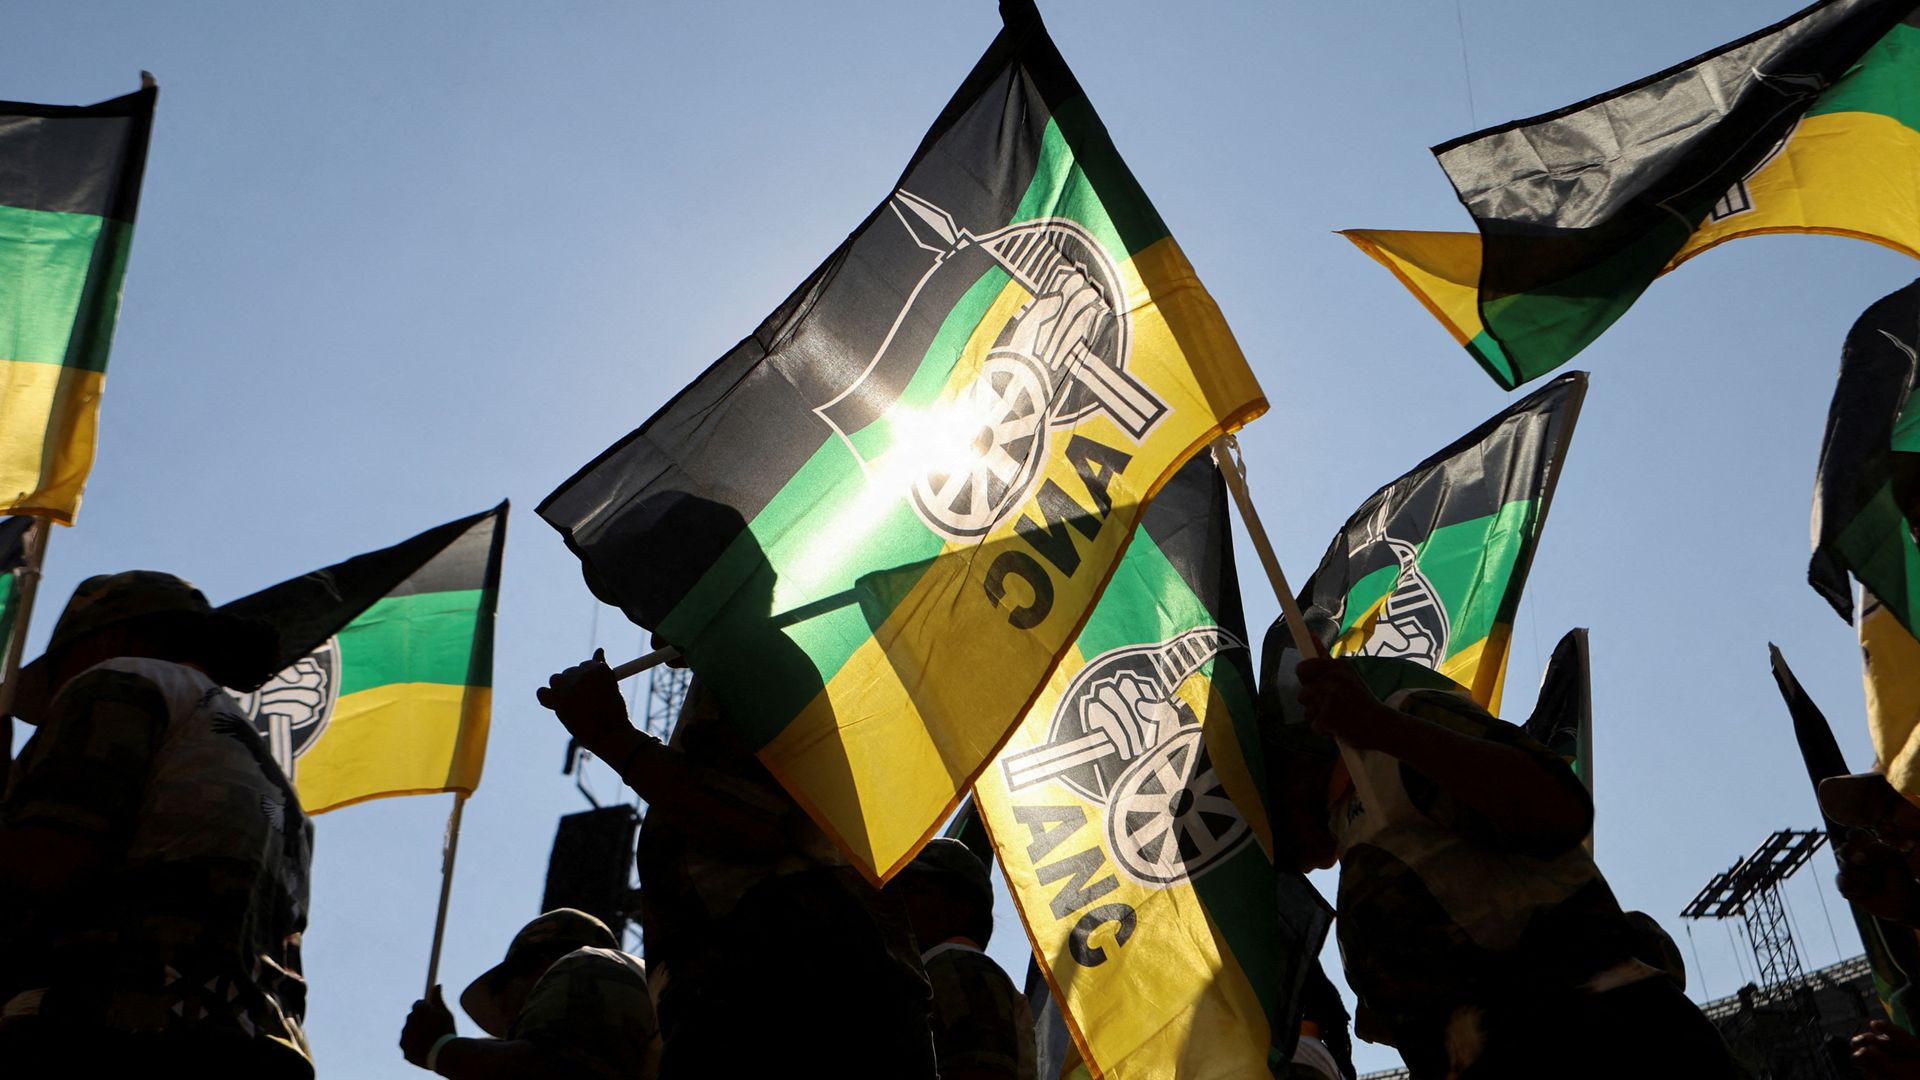 L’ANC si prepara a colloqui di coalizione “complicati” dopo aver perso la maggioranza parlamentare in Sudafrica